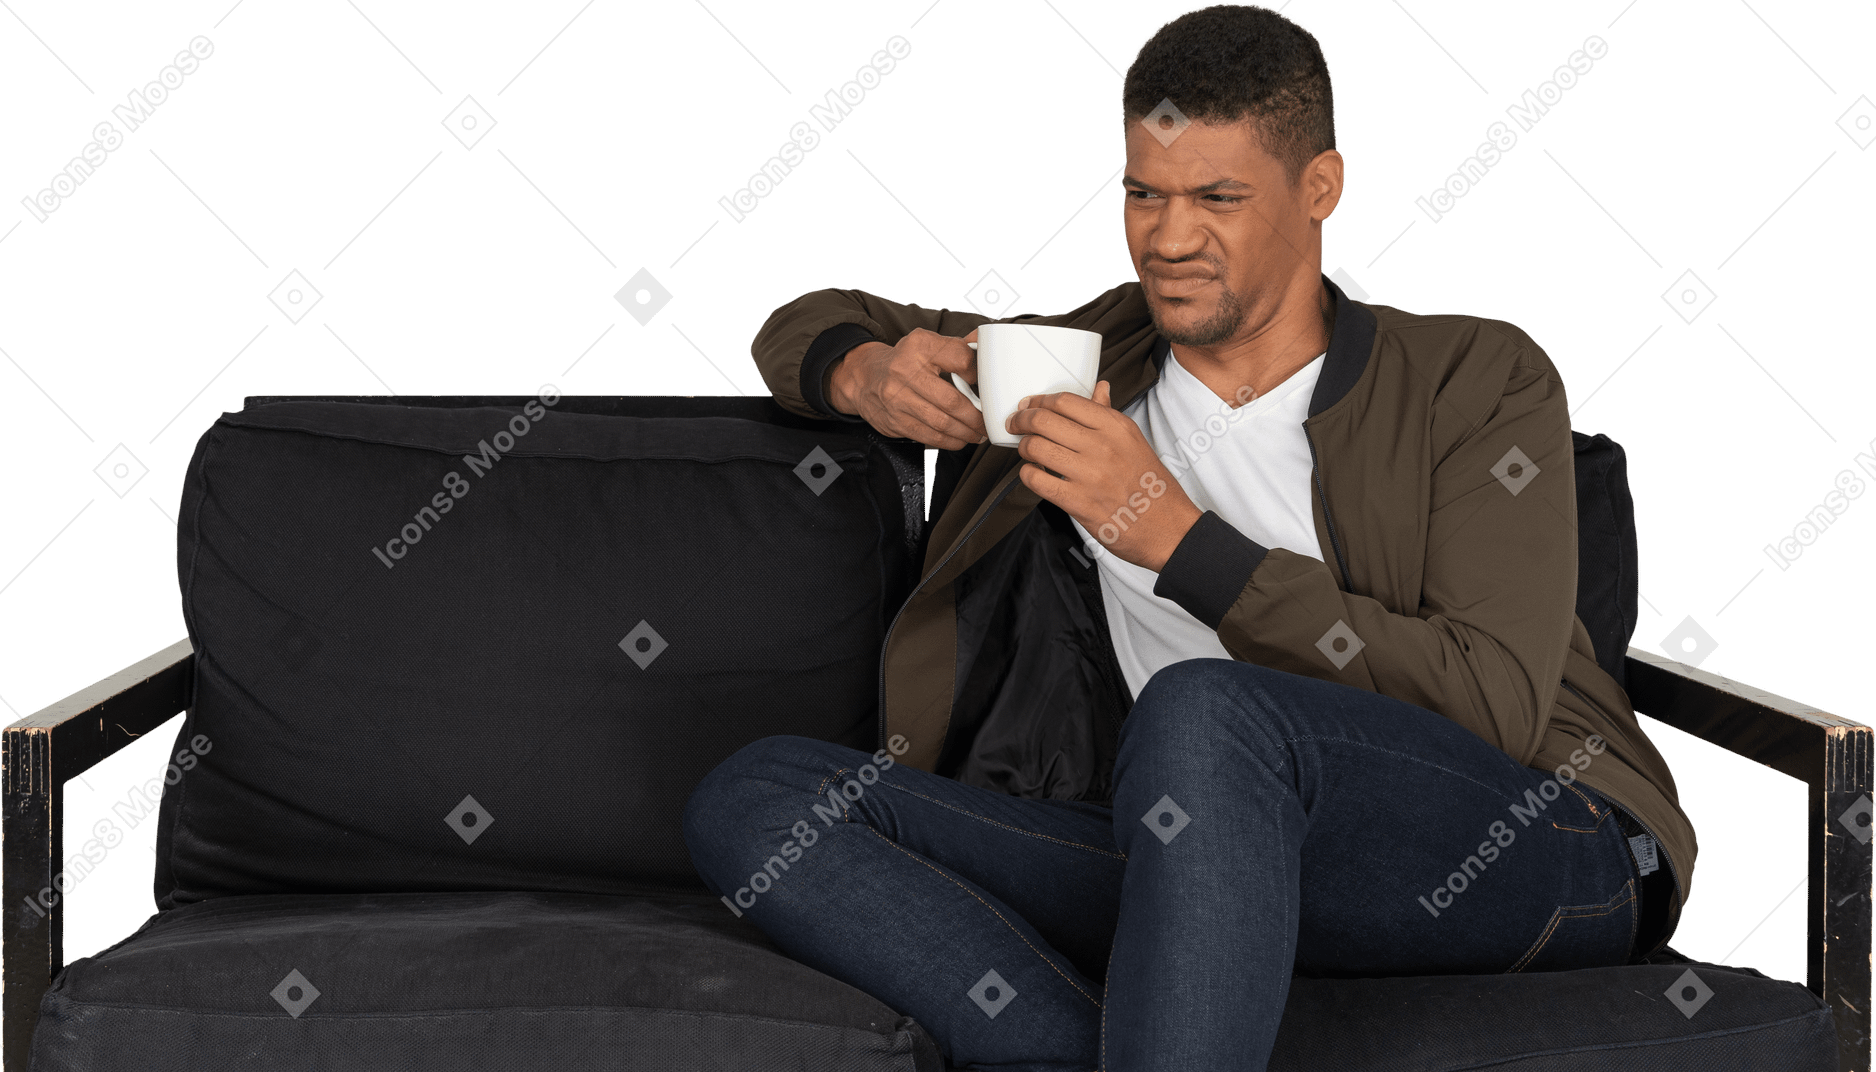 一杯のコーヒーとソファに座っている若い顔をゆがめた男の正面図